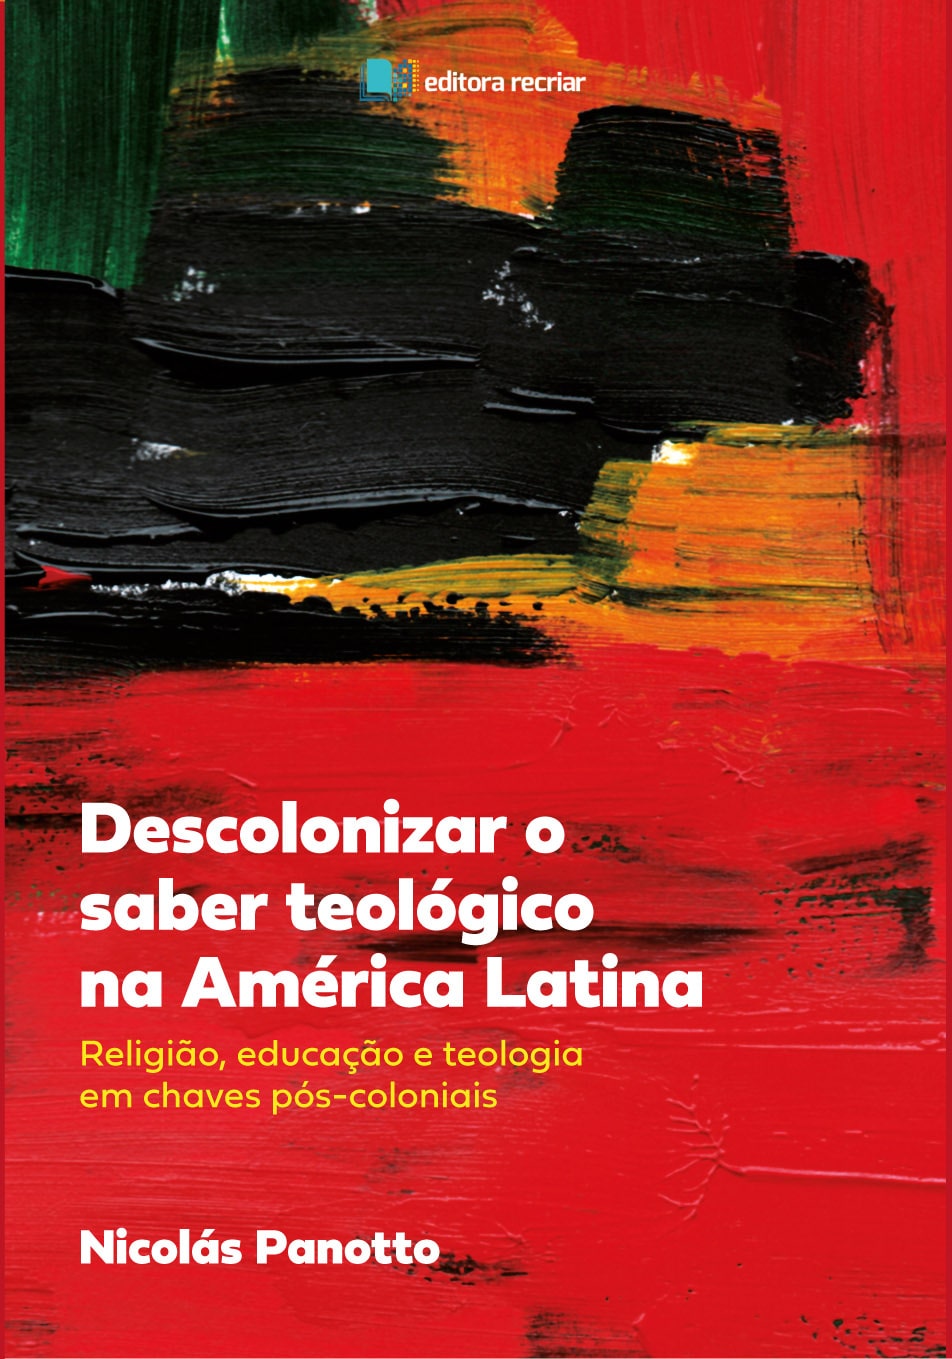 Descolonizar o saber teológico na América Latina - Nicolás Panotto